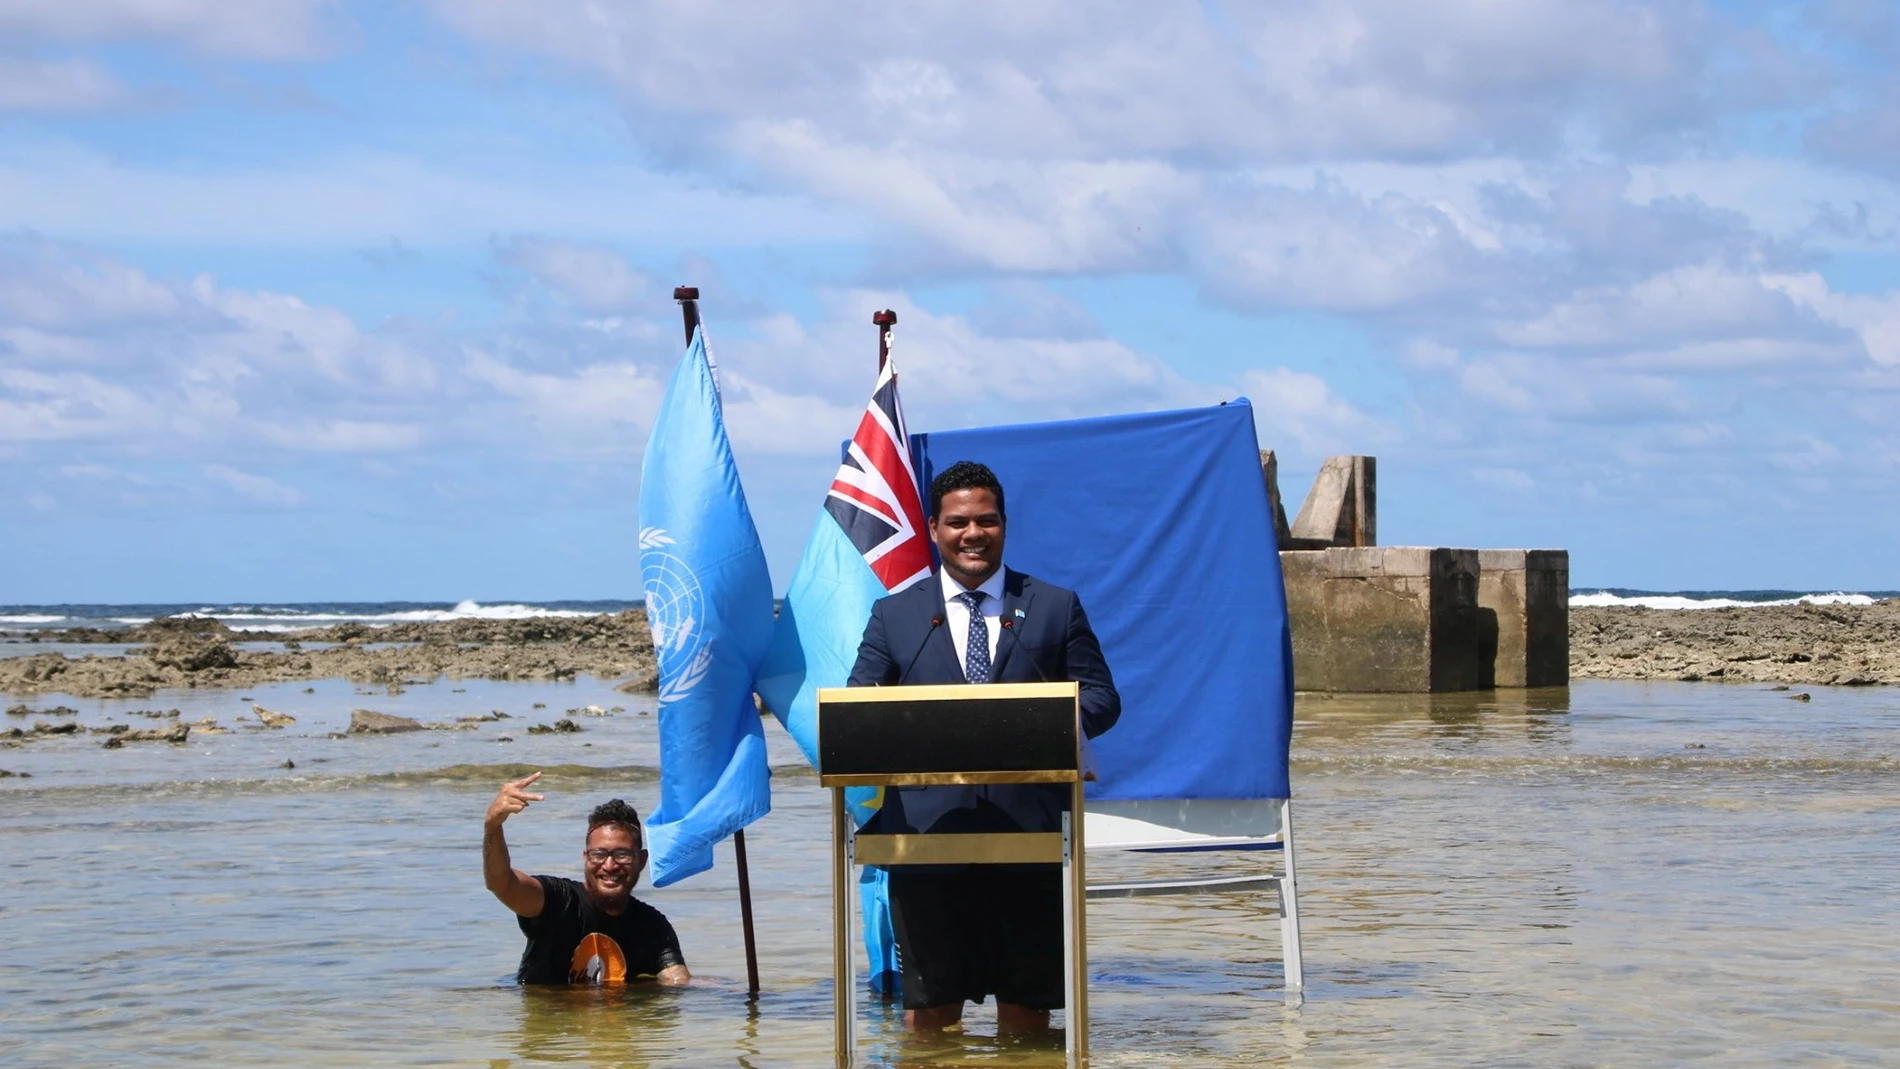 Un ministro de Tuvalu (Oceanía) graba su discurso para la Cumbre del Clima con el agua hasta las rodillas